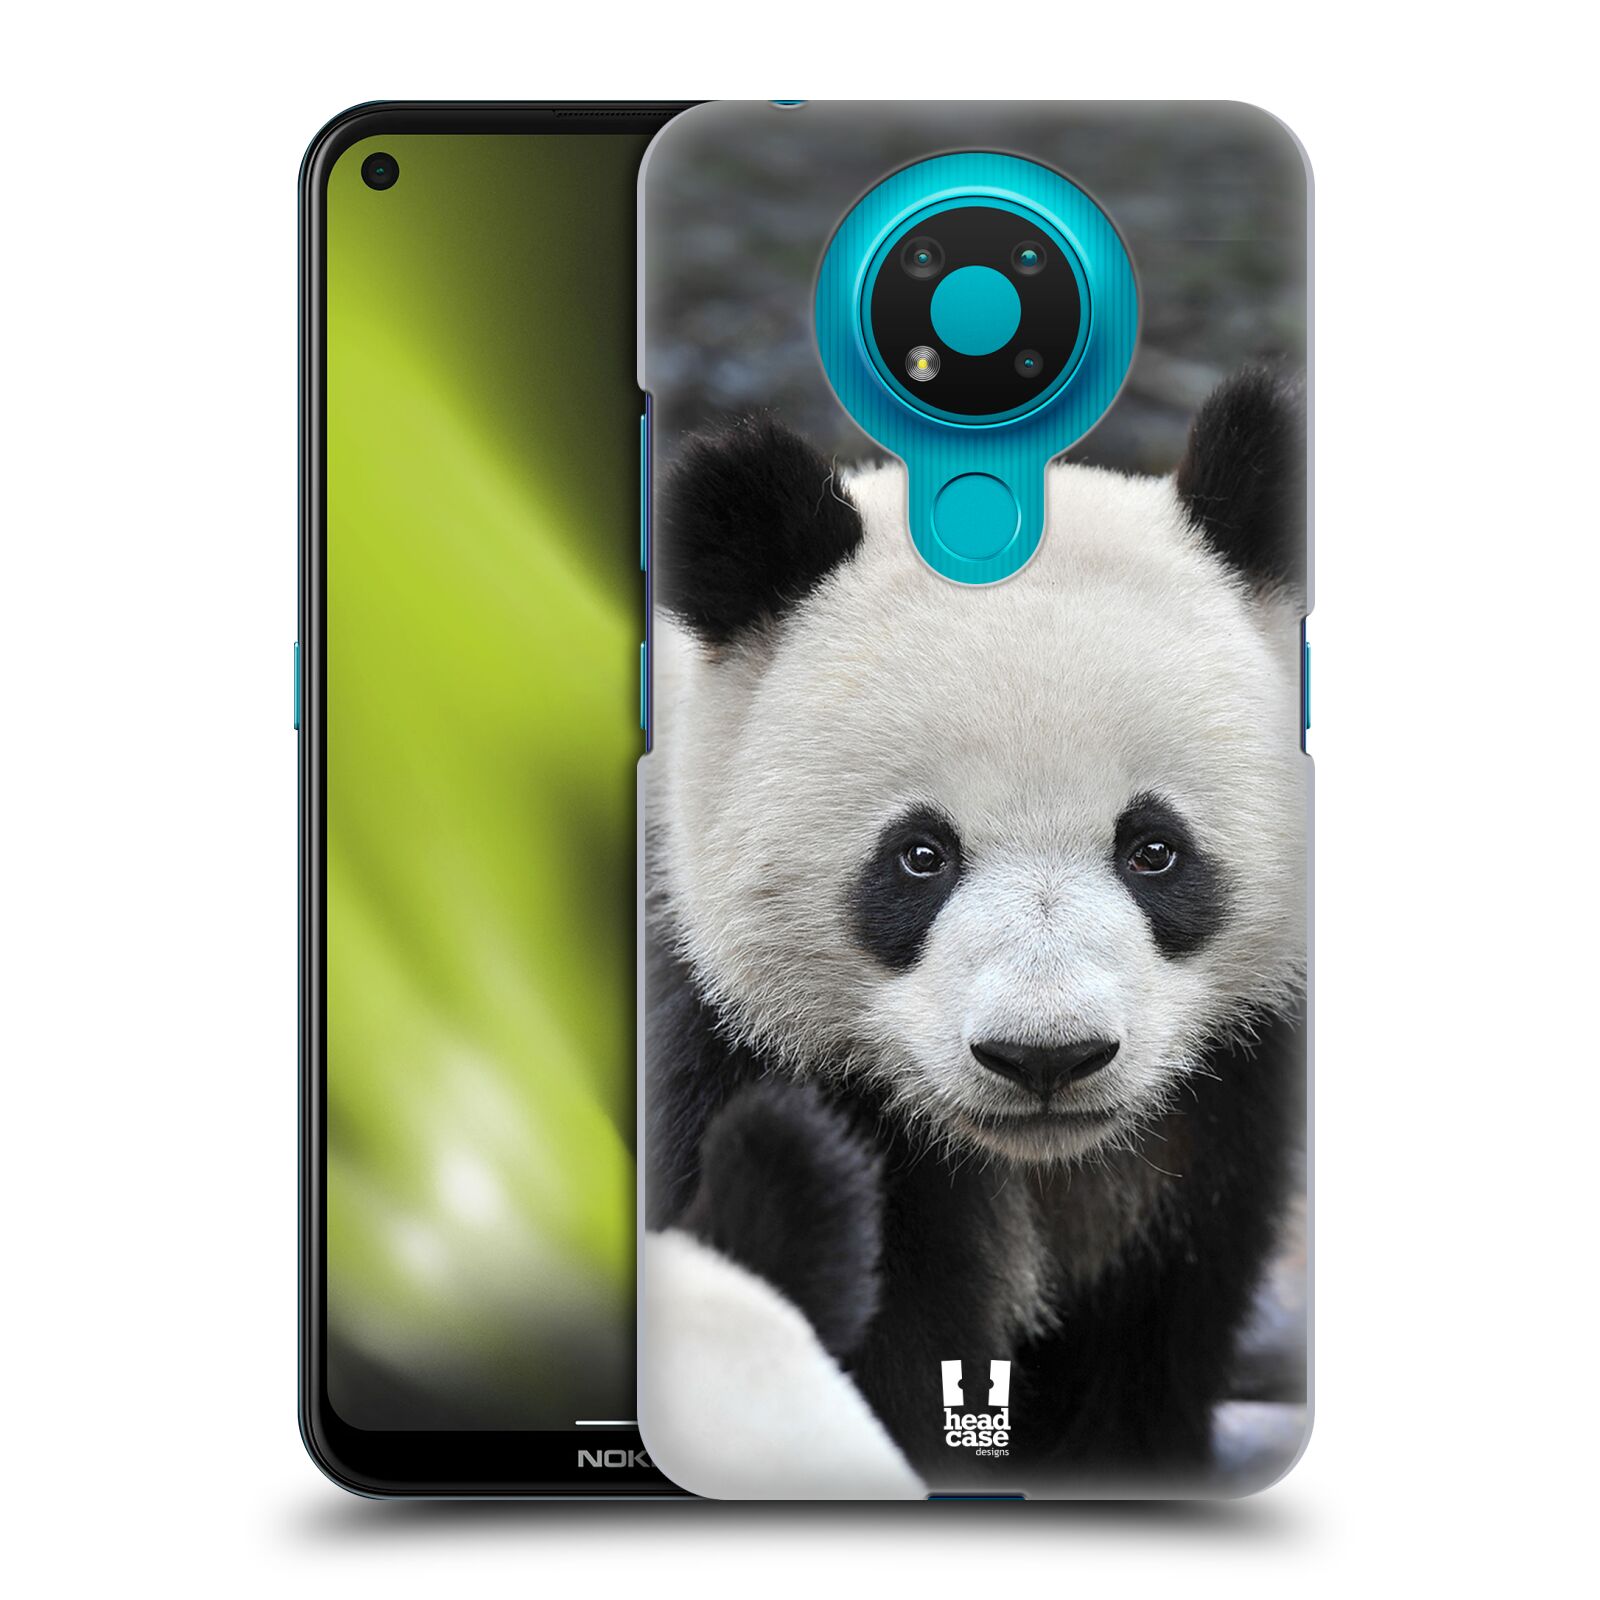 Zadní obal pro mobil Nokia 3.4 - HEAD CASE - Svět zvířat medvěd panda